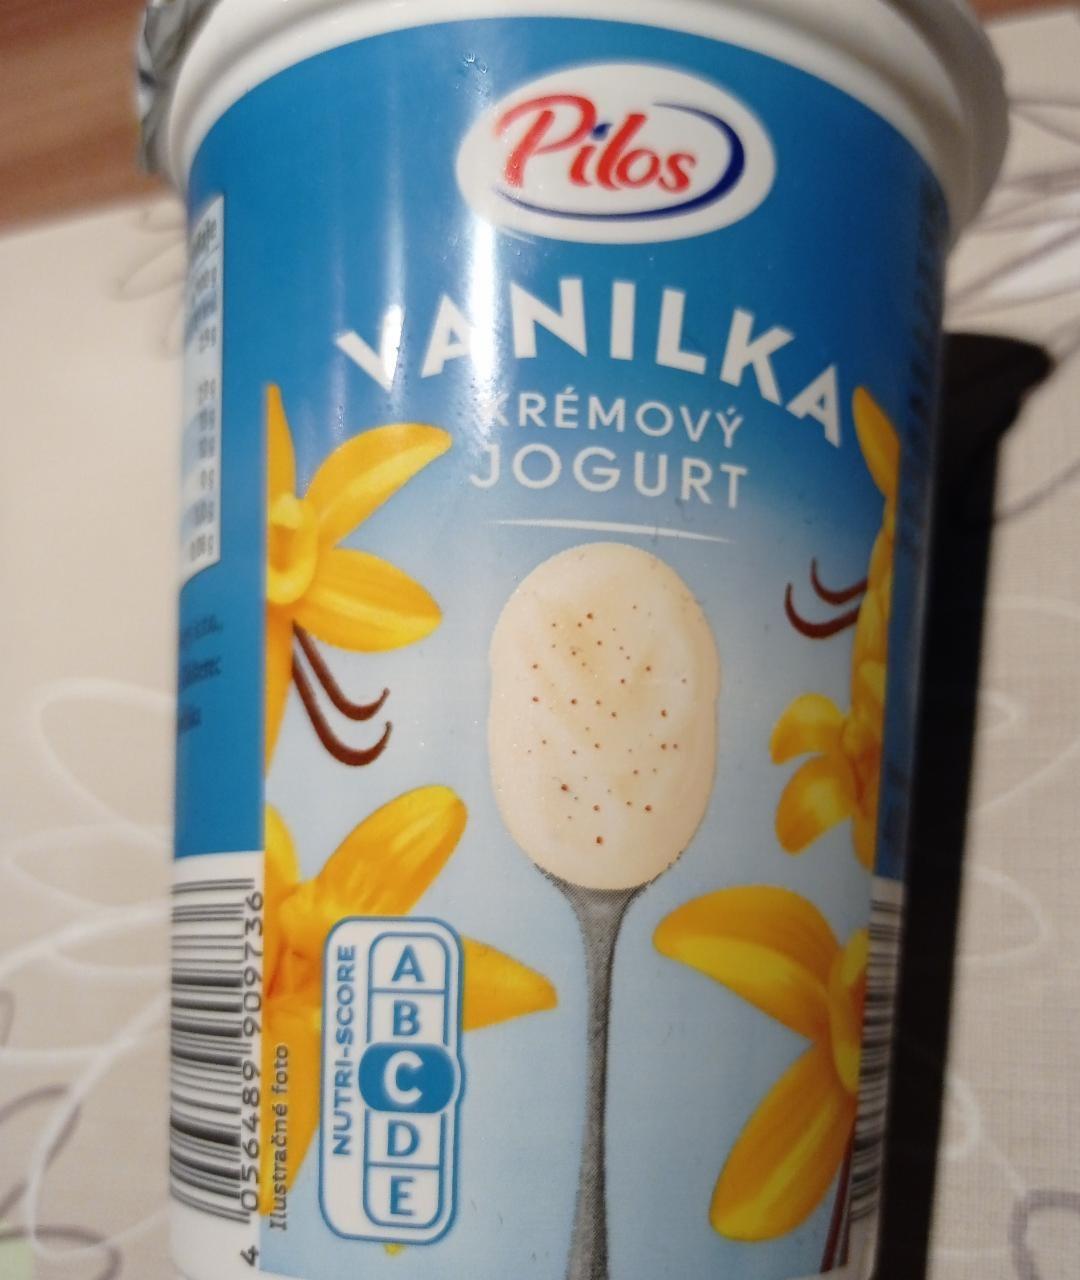 Fotografie - Vanilka Krémový jogurt Pilos